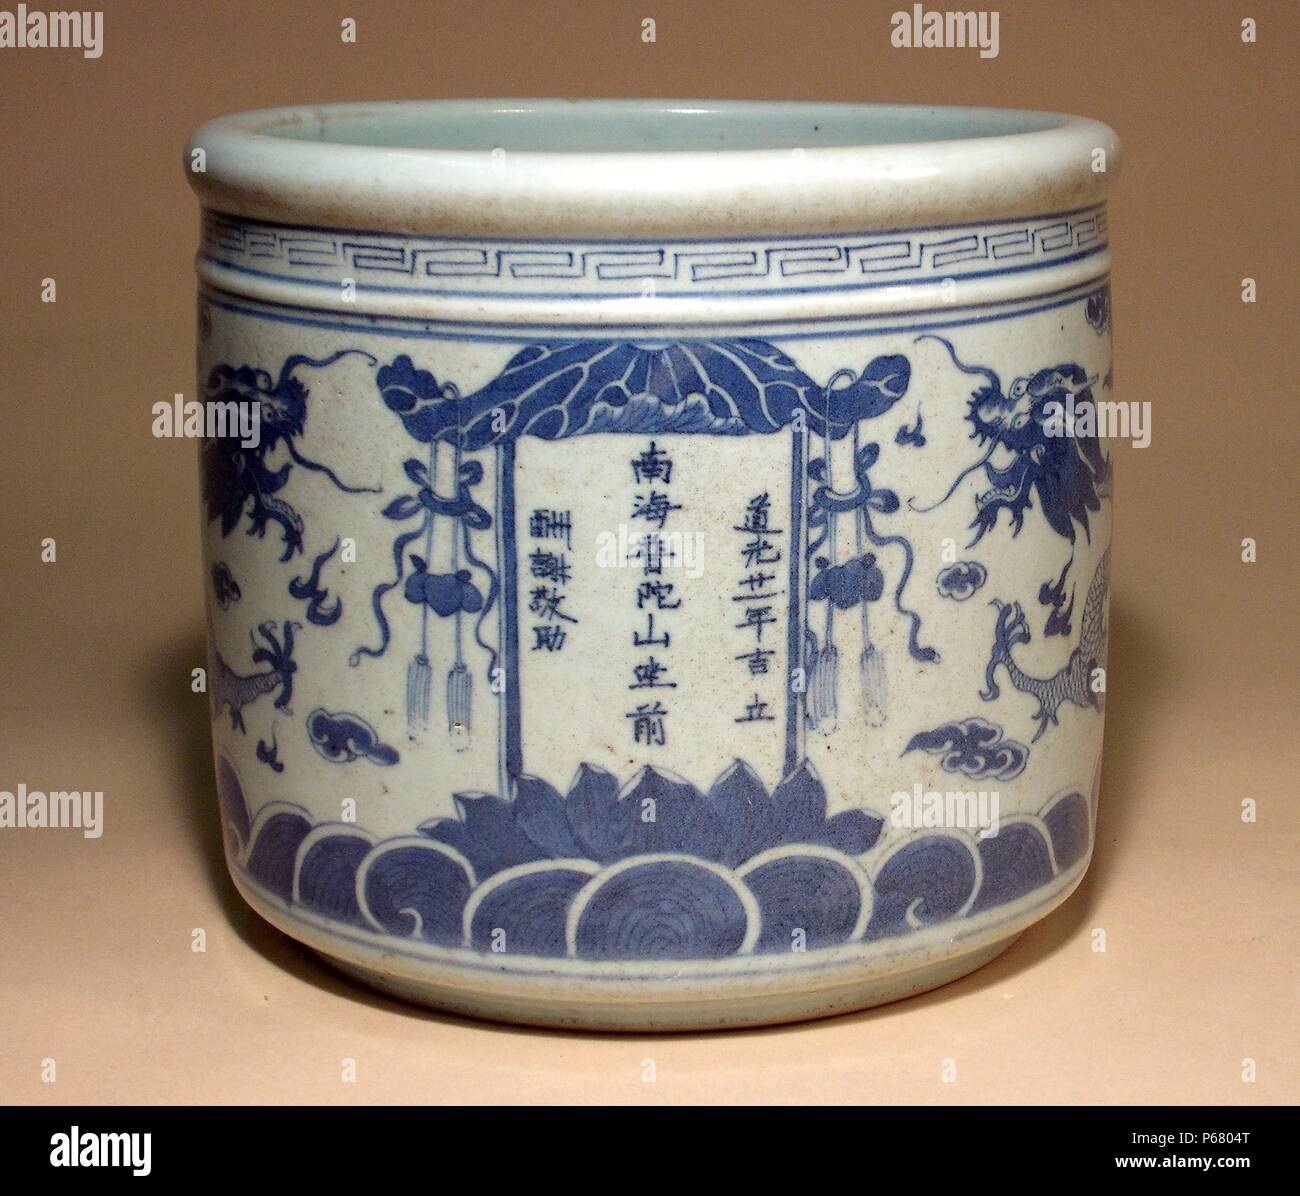 Alten China: Zylindrische Dose mit Drachen Dekorationen; Qing Dynastie, 1644-1912 n. Chr.. Blau-weiße Keramik. Stockfoto